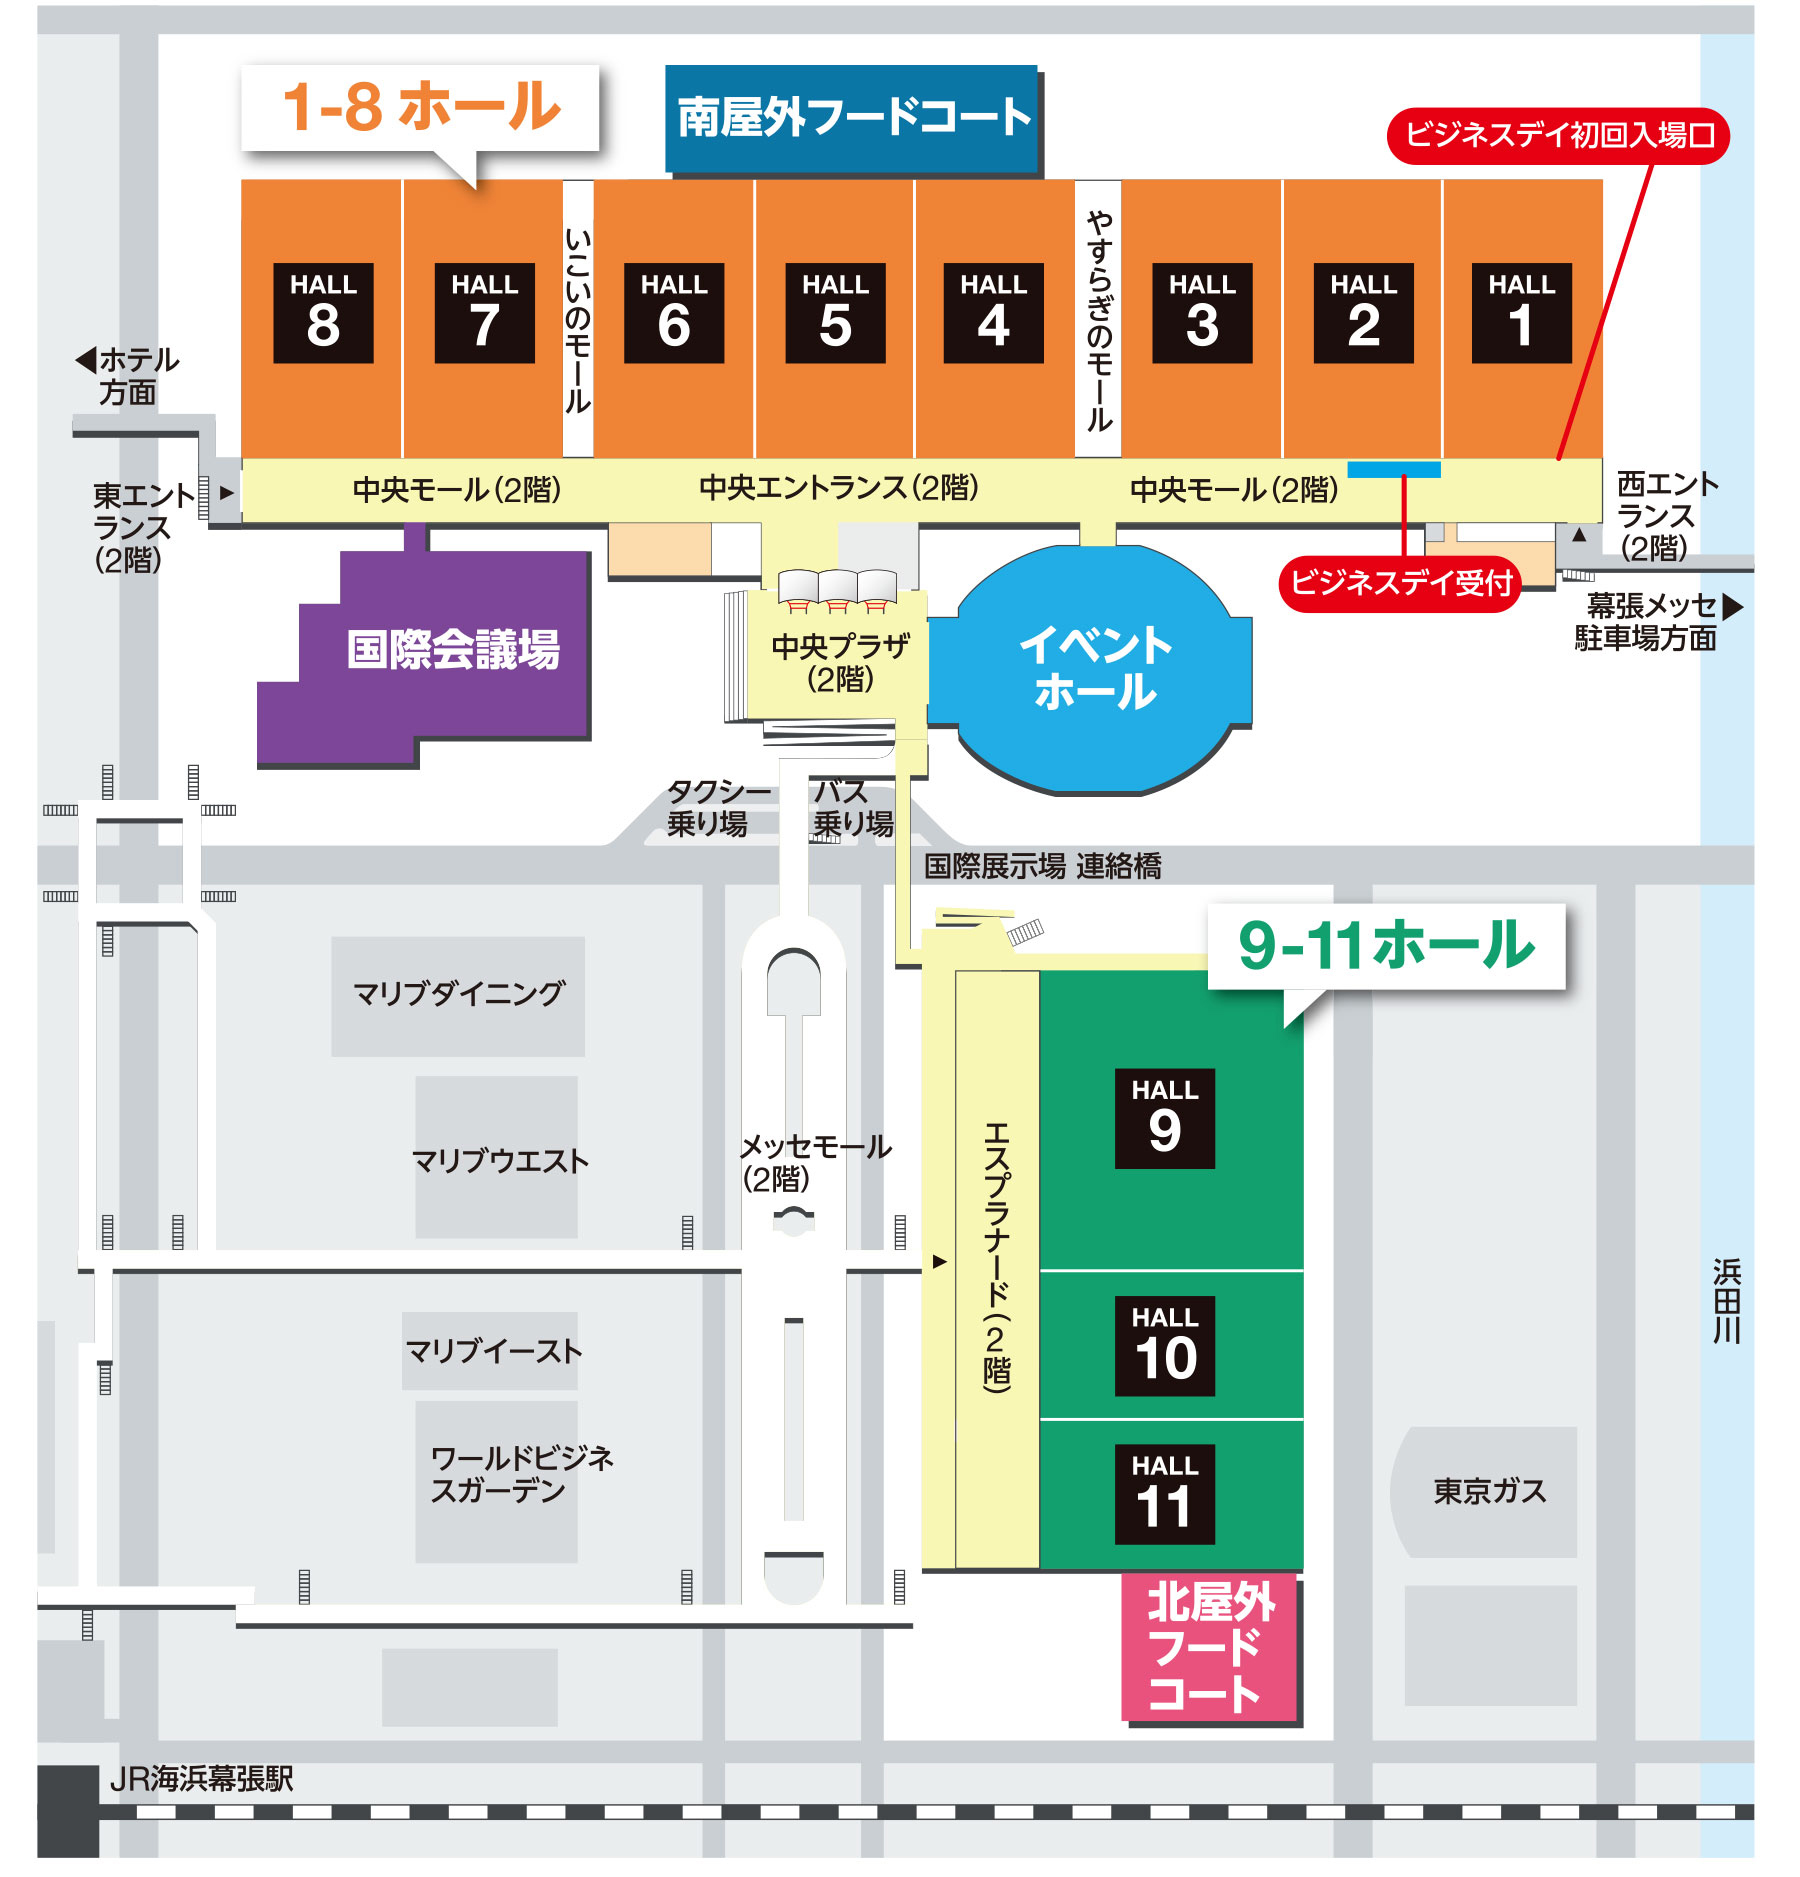 会場map Tokyo Game Show 19 東京ゲームショウ19